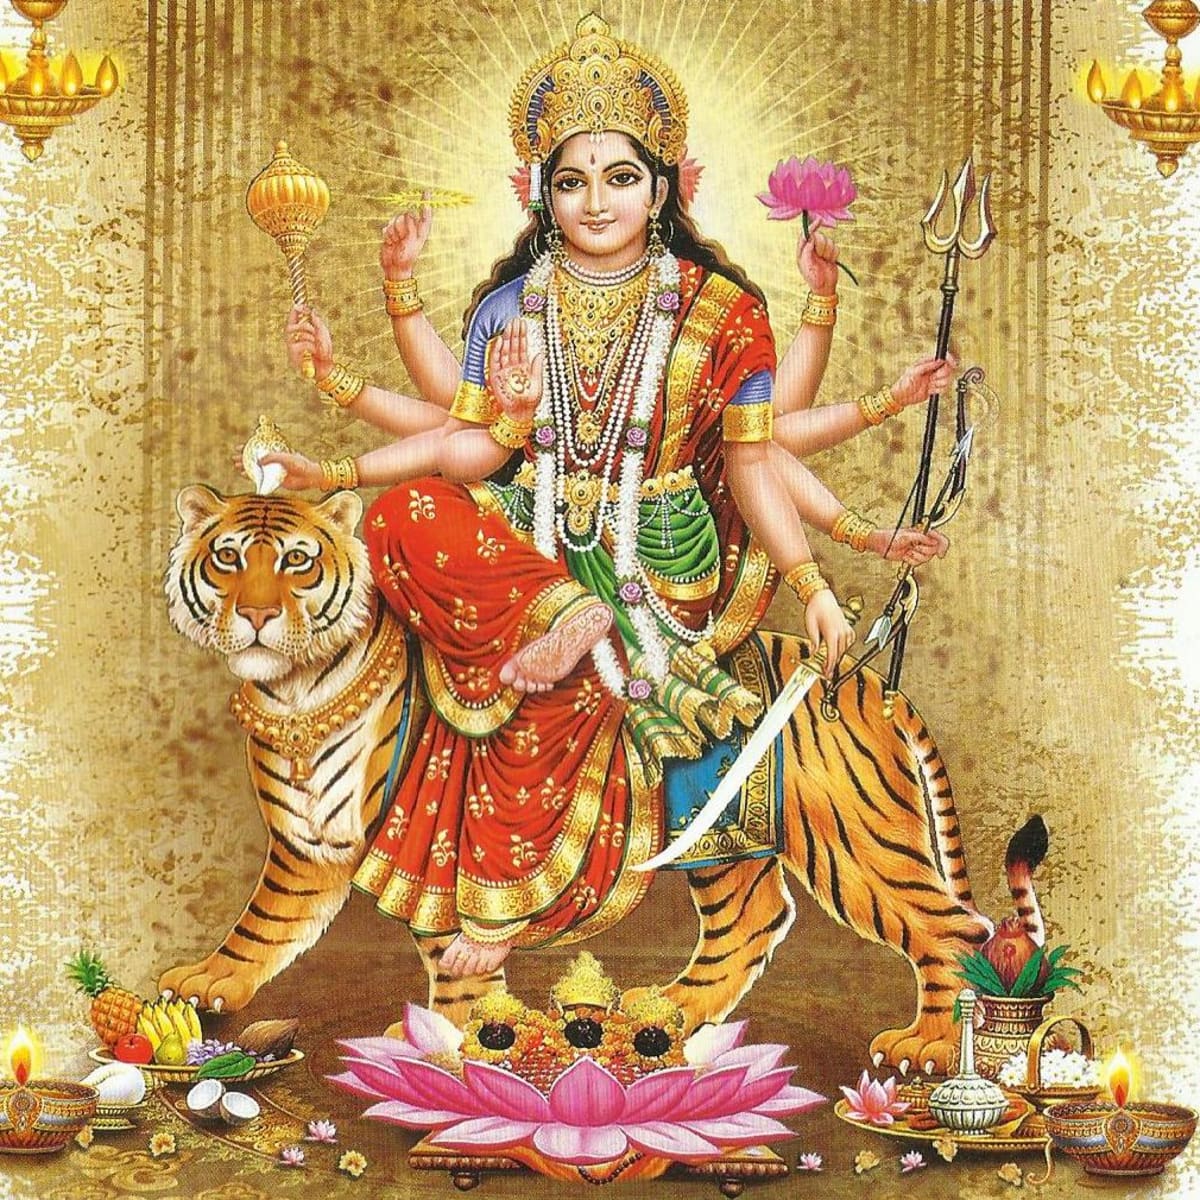 Alstublieft geur Lastig Mantras of Goddess Durga - The Universal Mother - HubPages